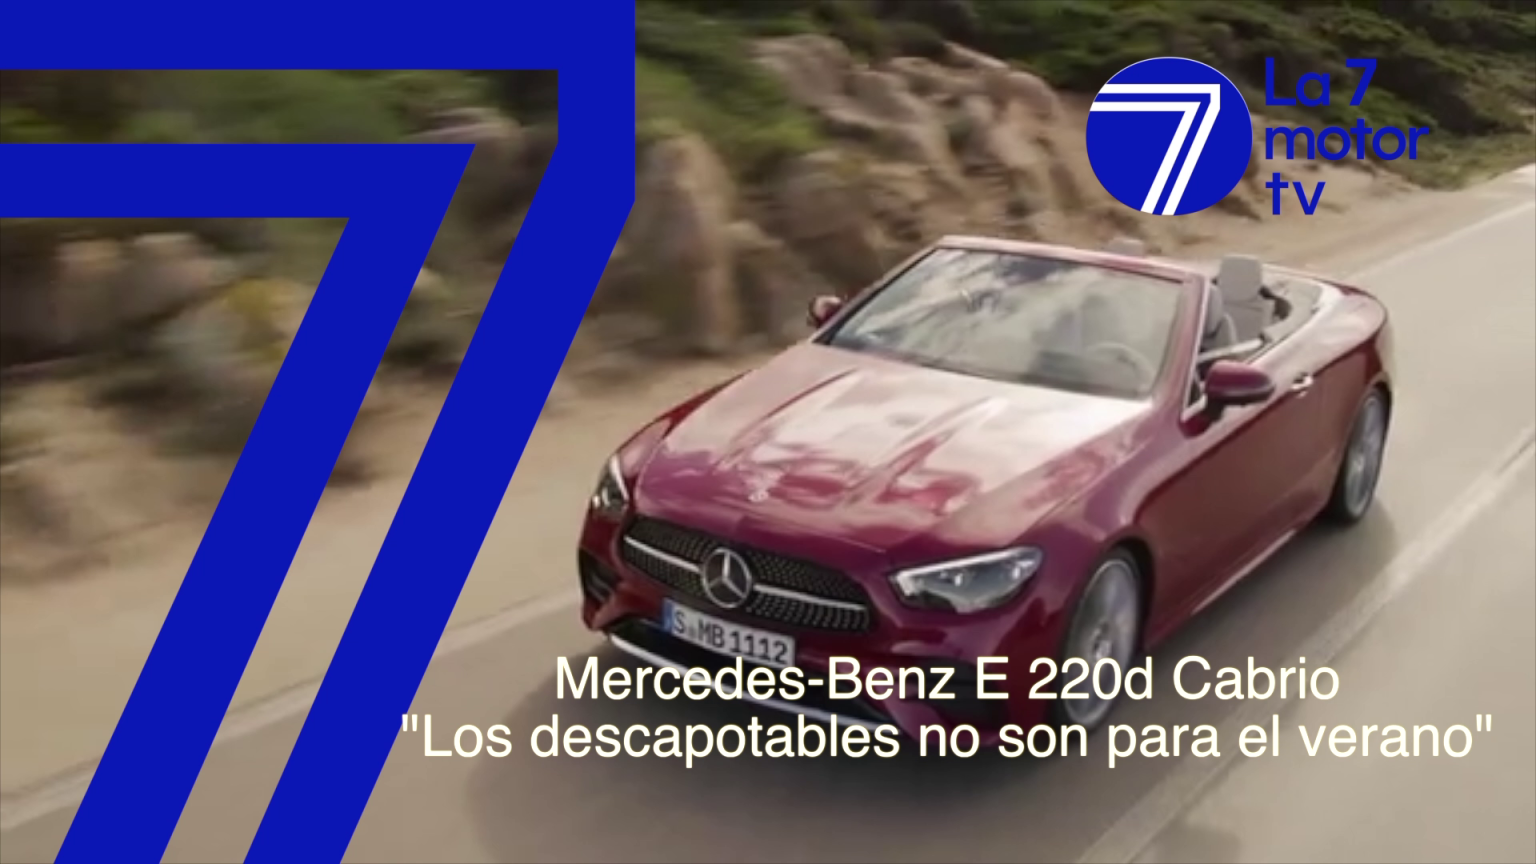 Mercedes-Benz E 220d Cabrio: los descapotables no son para el verano